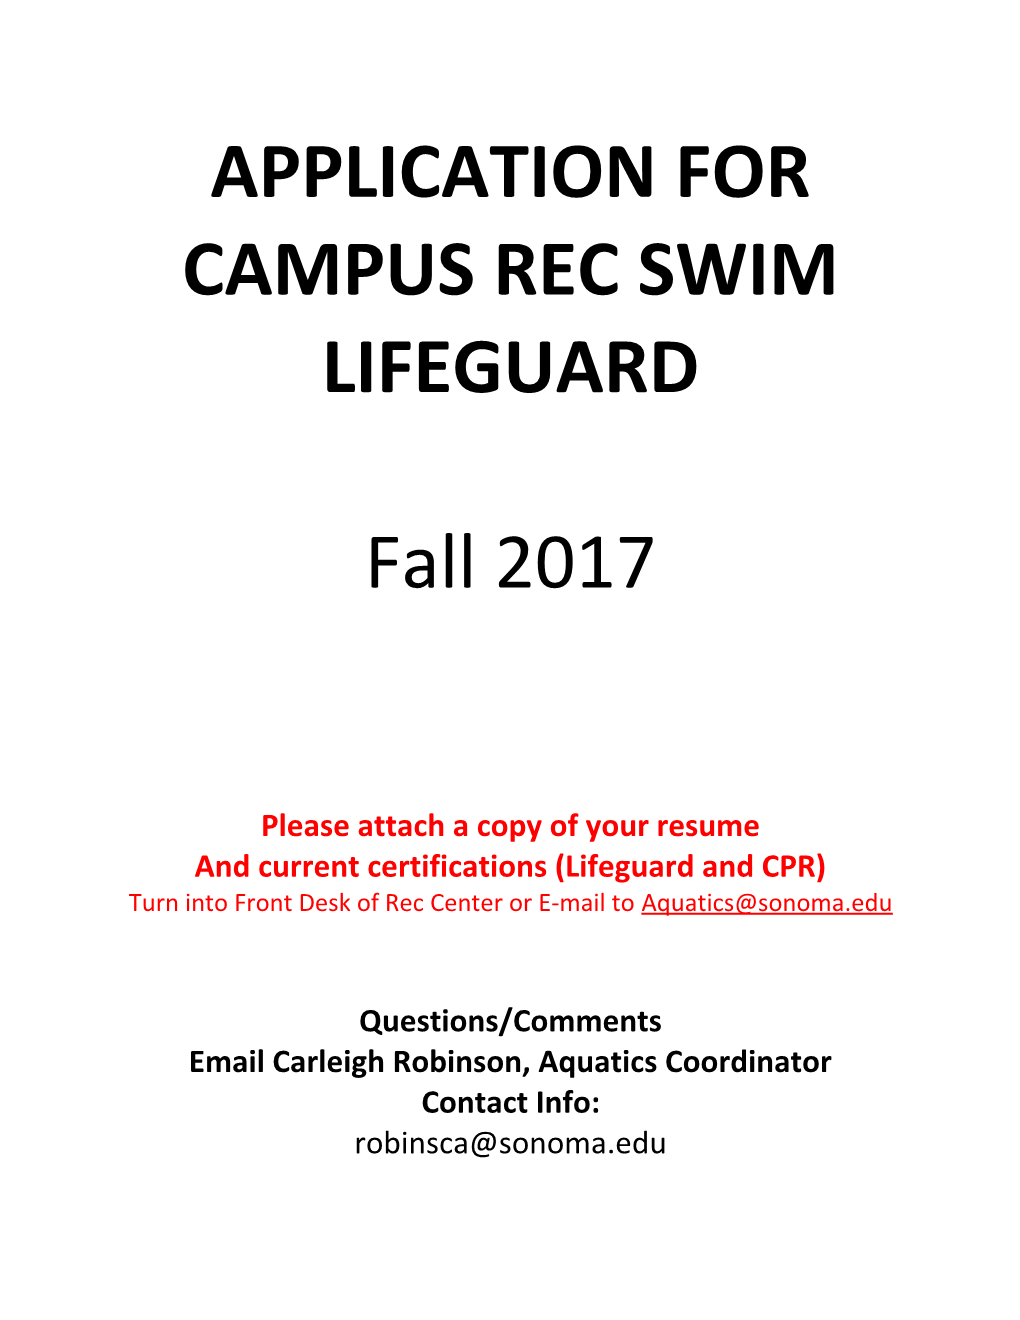 Application for Campus Rec Swim Lifeguard